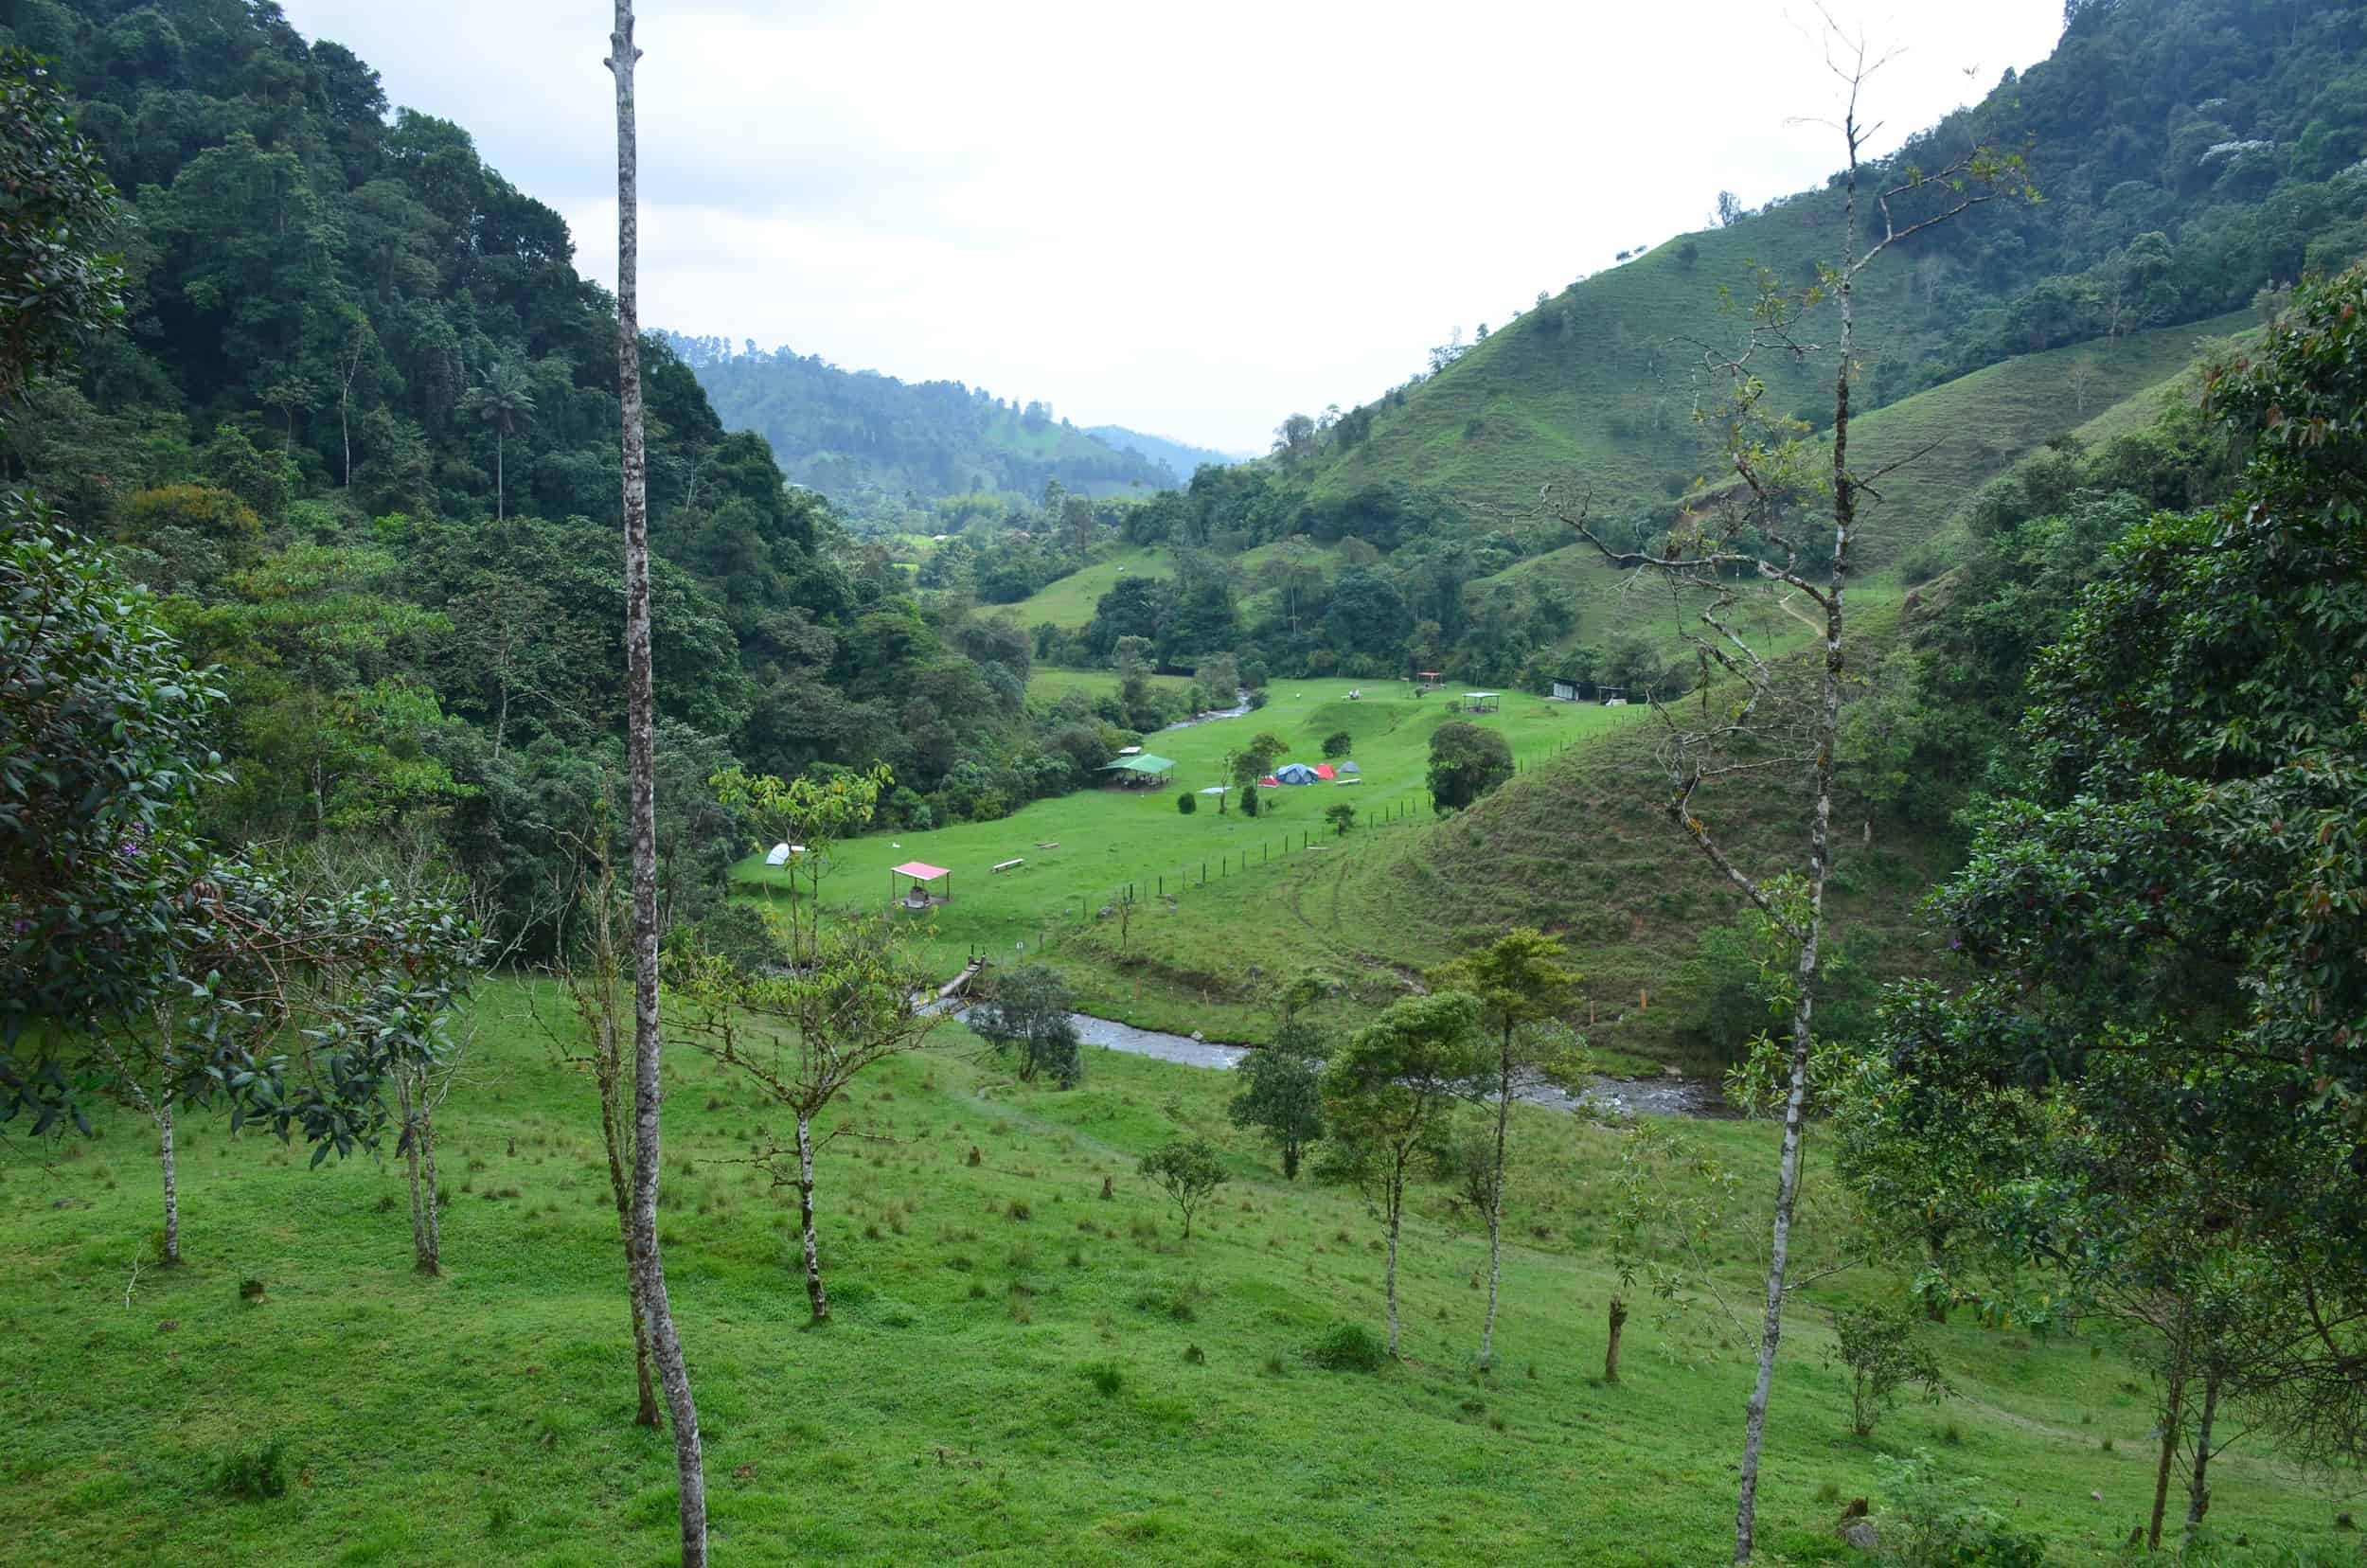 Looking towards the campground at Santa Rita Nature Reserve in Boquía, Salento, Quindío, Colombia